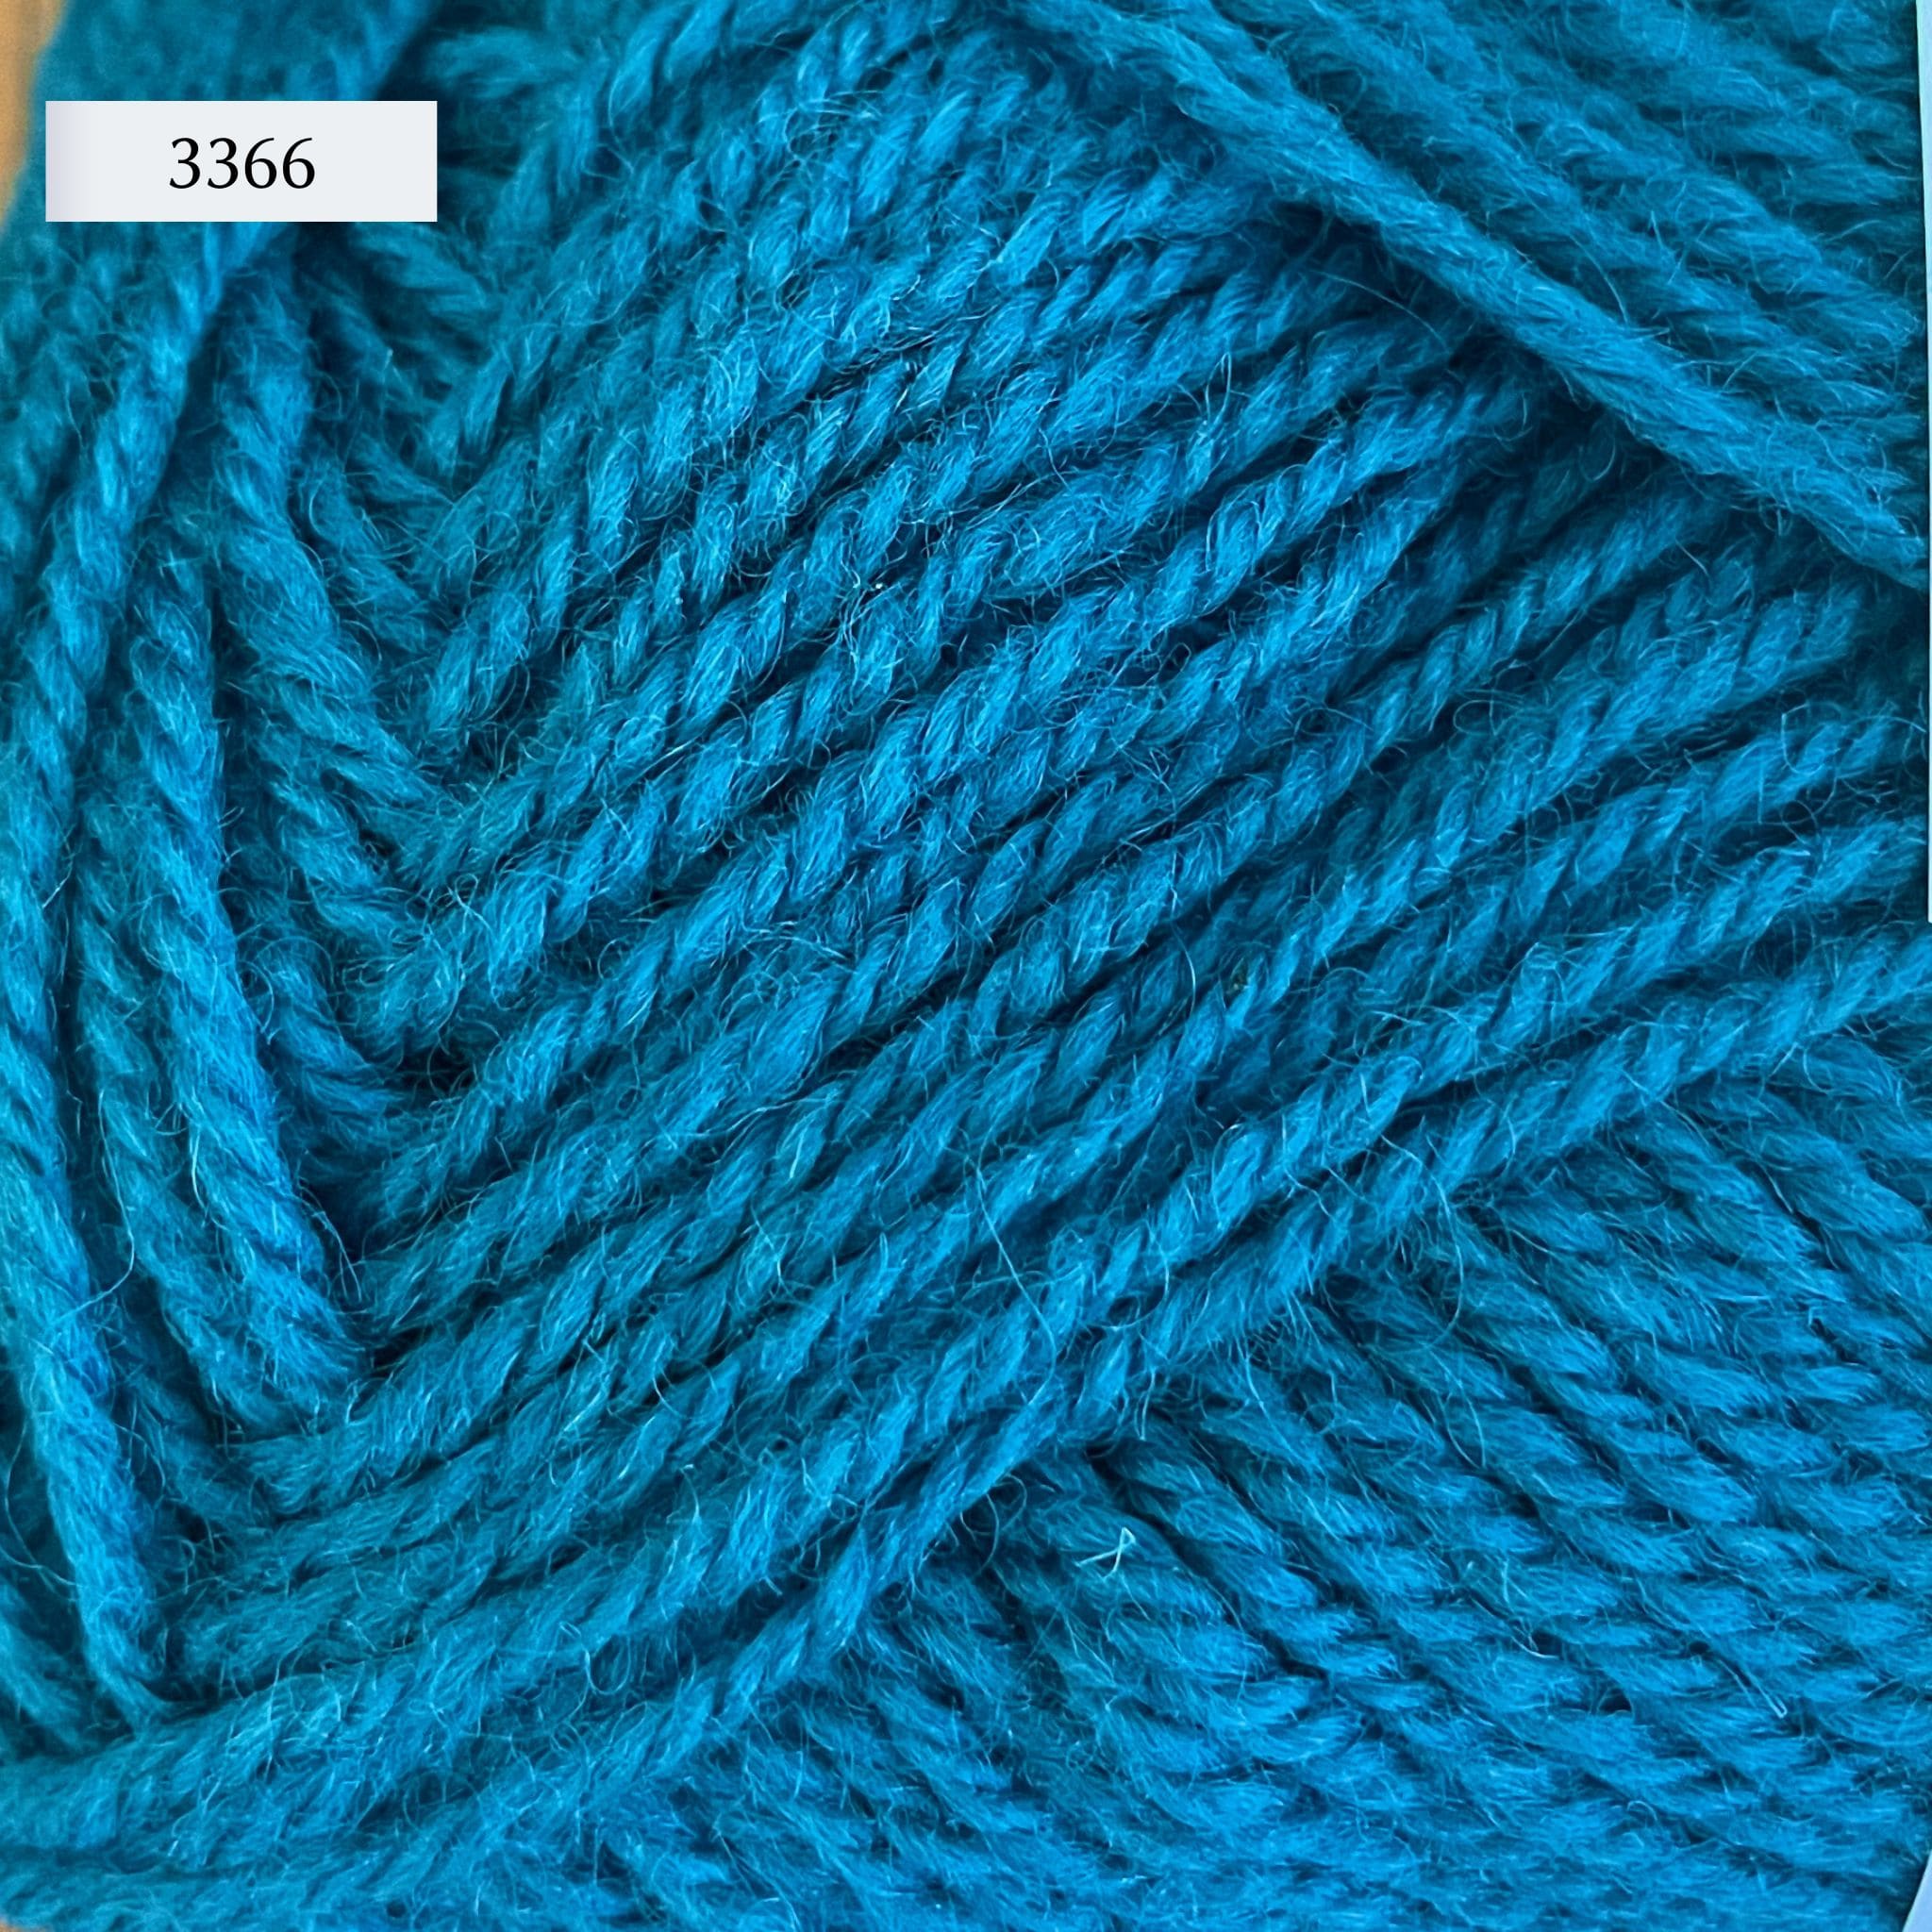 Rauma Strikkegarn, DK weight yarn, in color 3366, a petrol blue teal